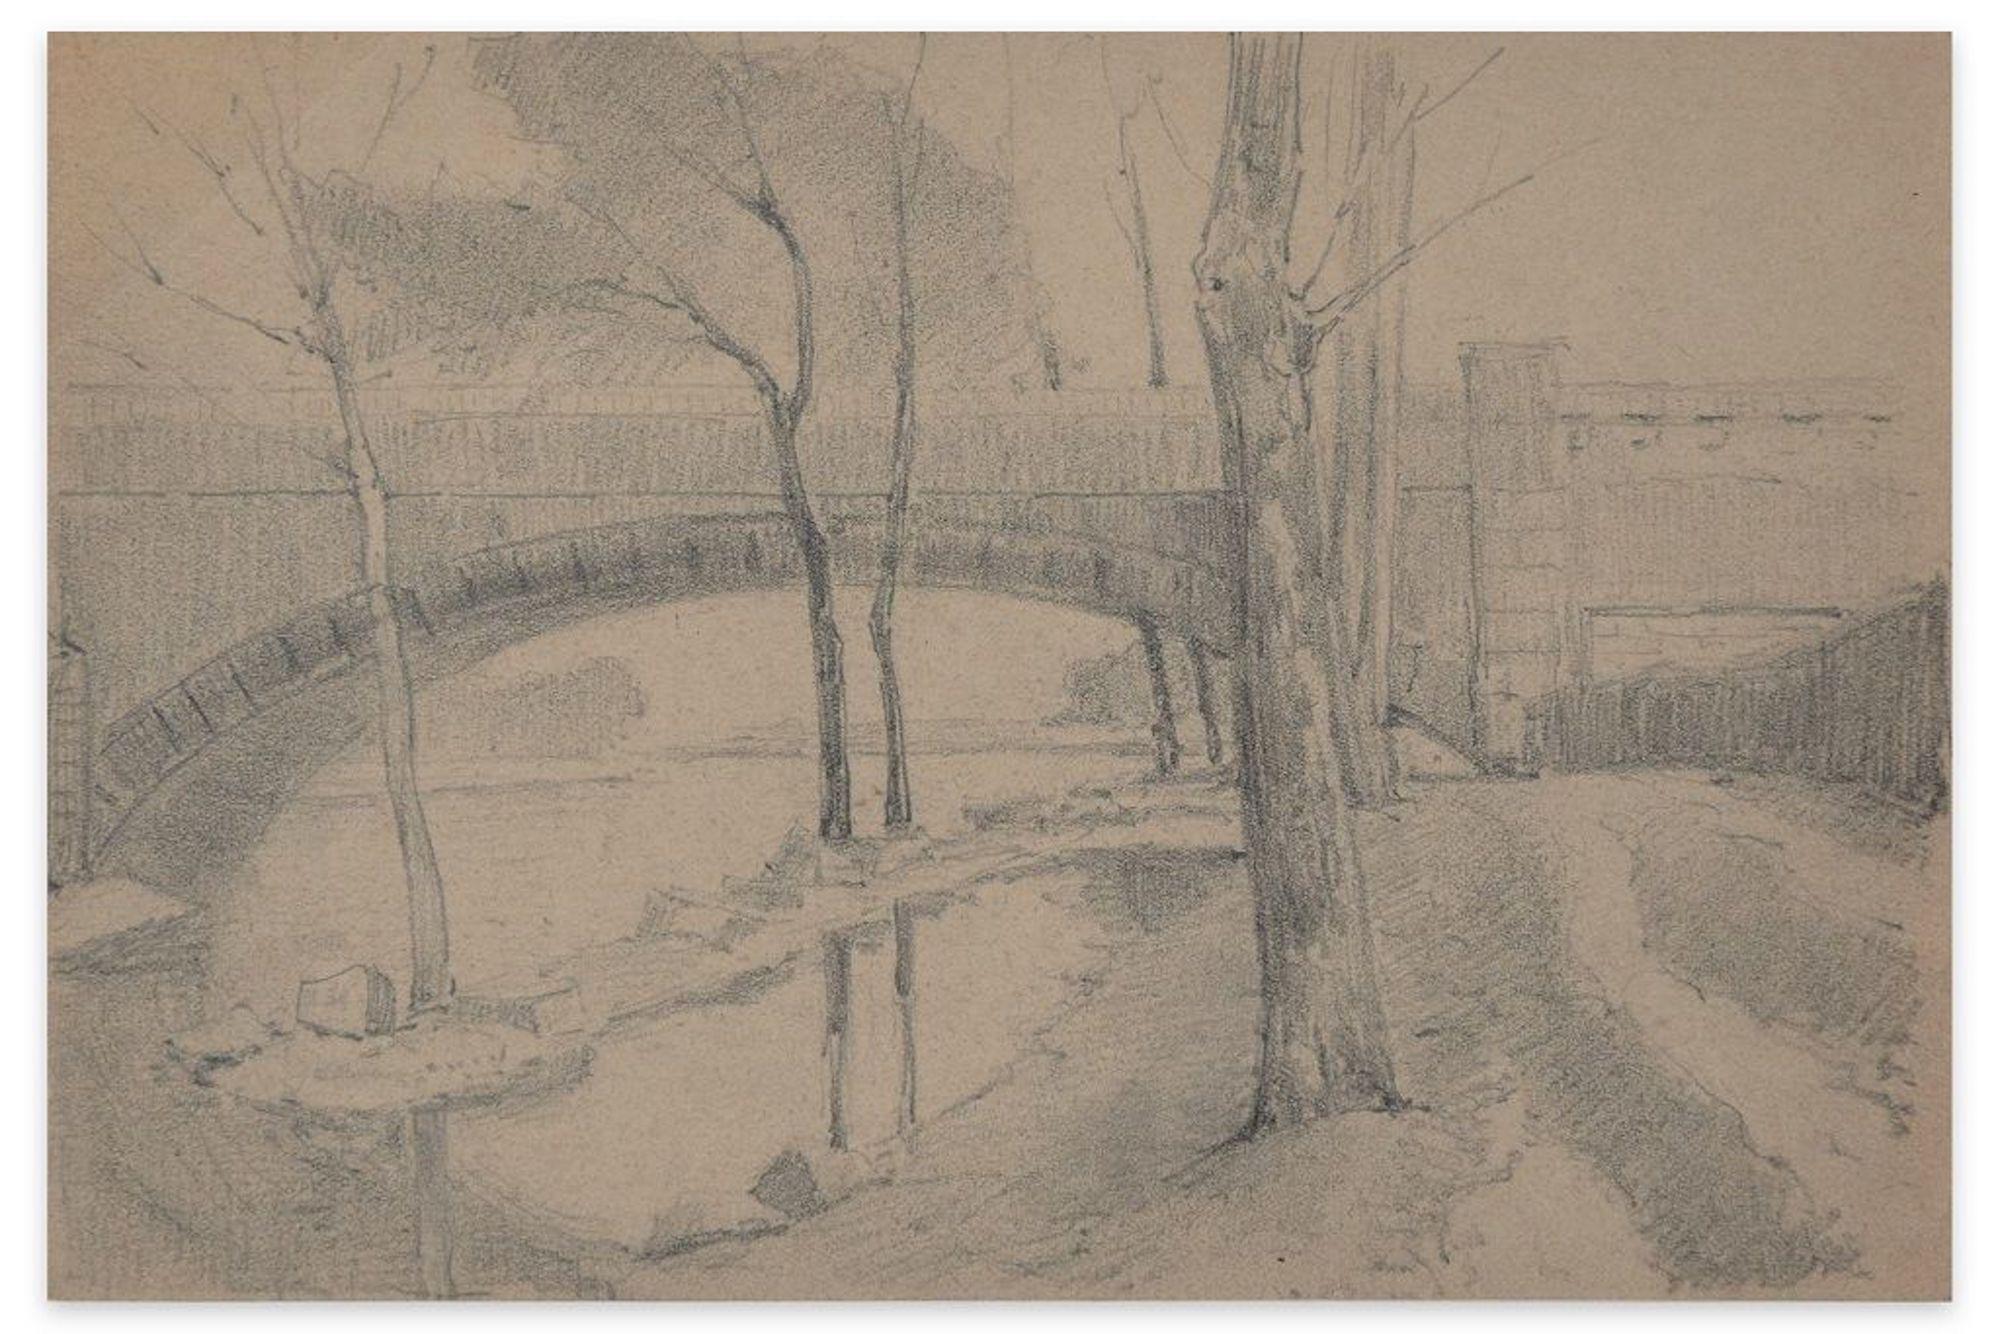 Emile-Louis Minet Landscape Art - Bridge on the River - Charcoal and Pencil by E.-L. Minet - 1919